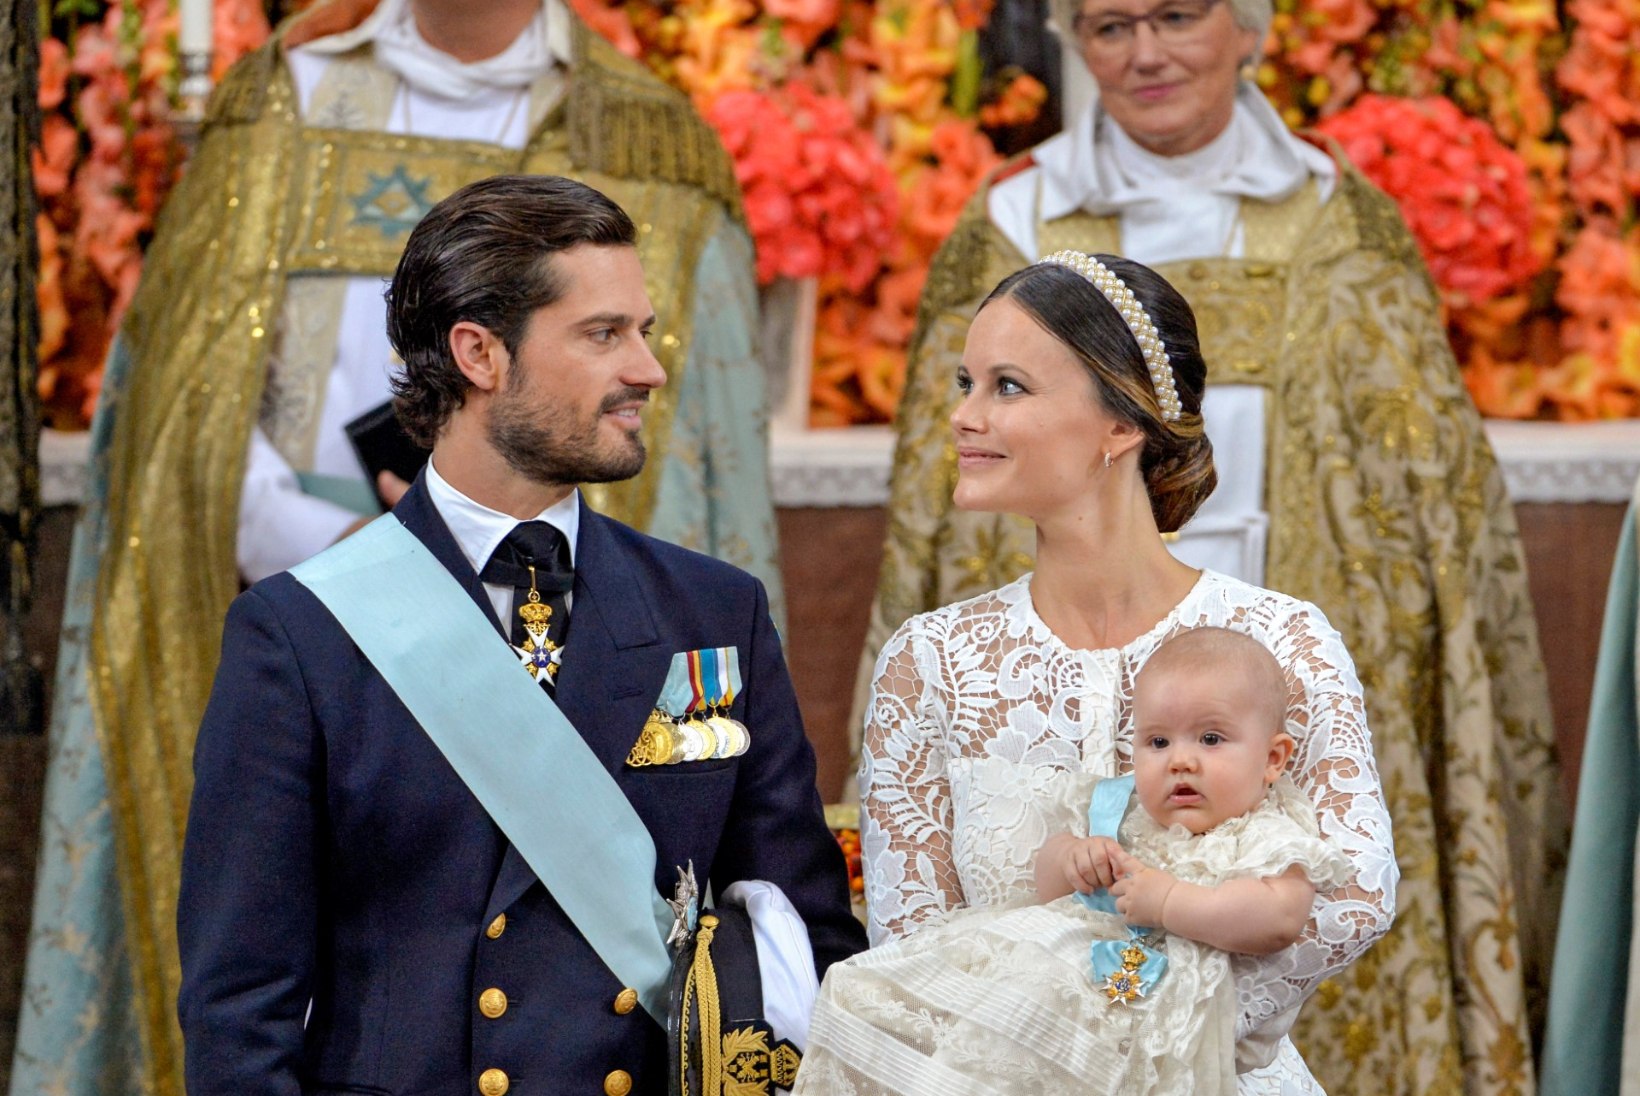 PALJU ÕNNE! Rootsi printsess Sofia tähistab täna sünnipäeva